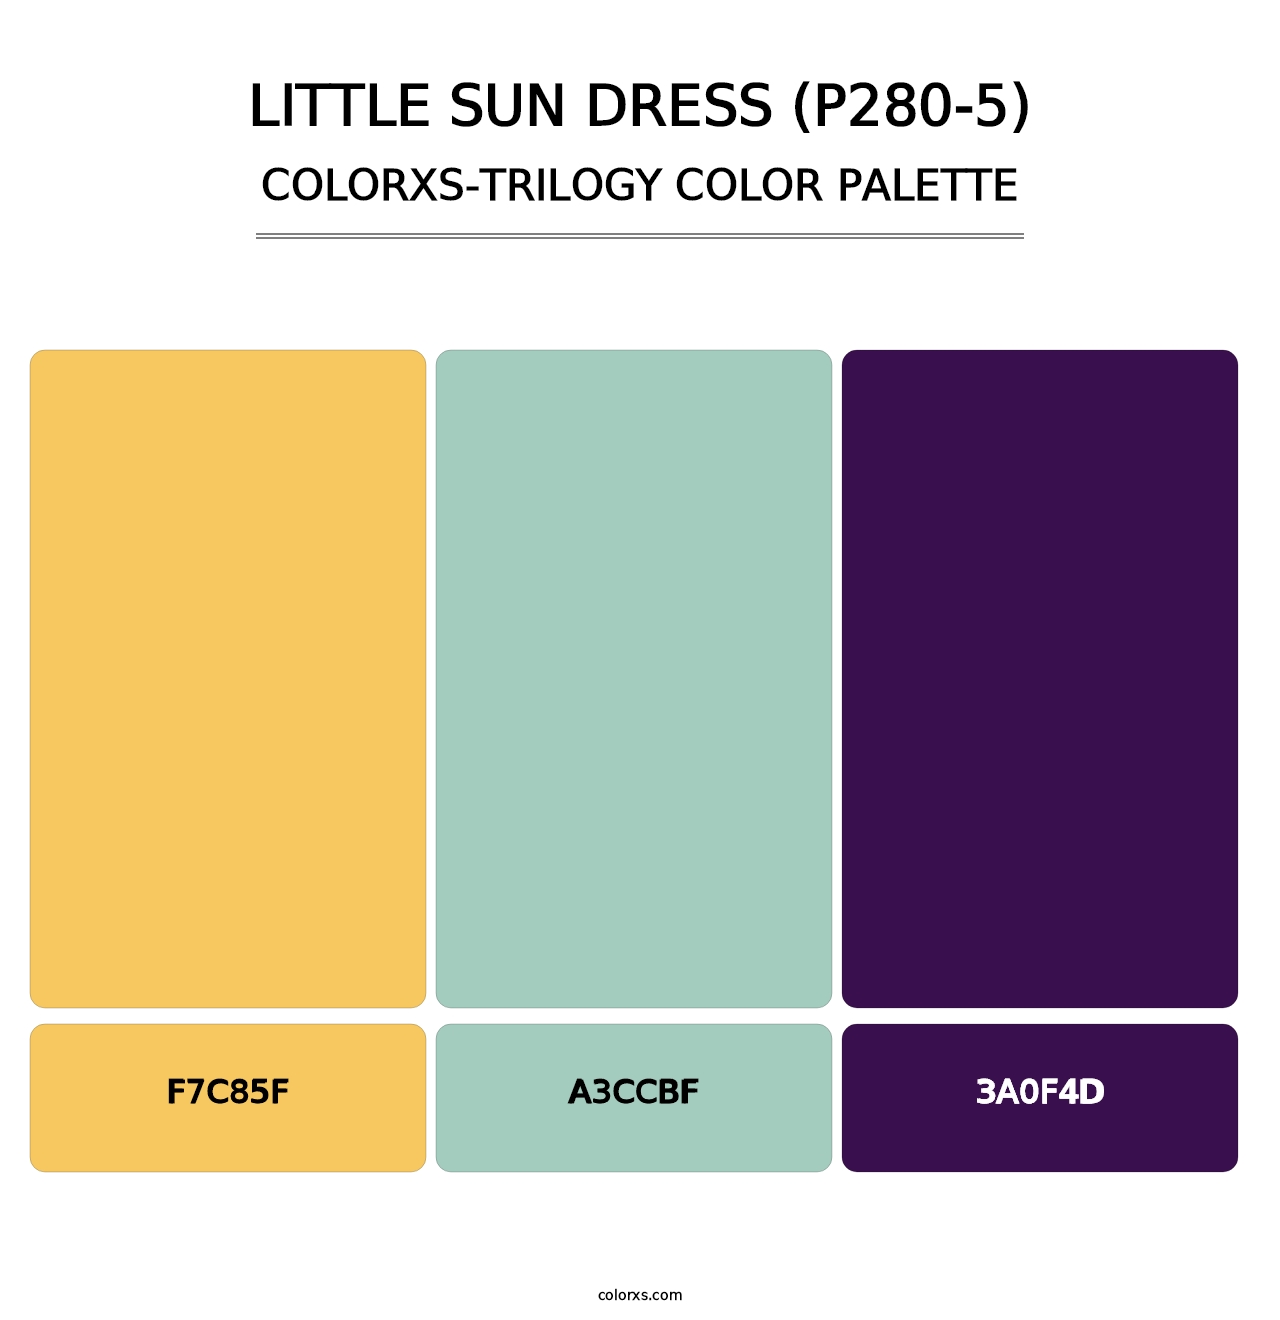 Little Sun Dress (P280-5) - Colorxs Trilogy Palette